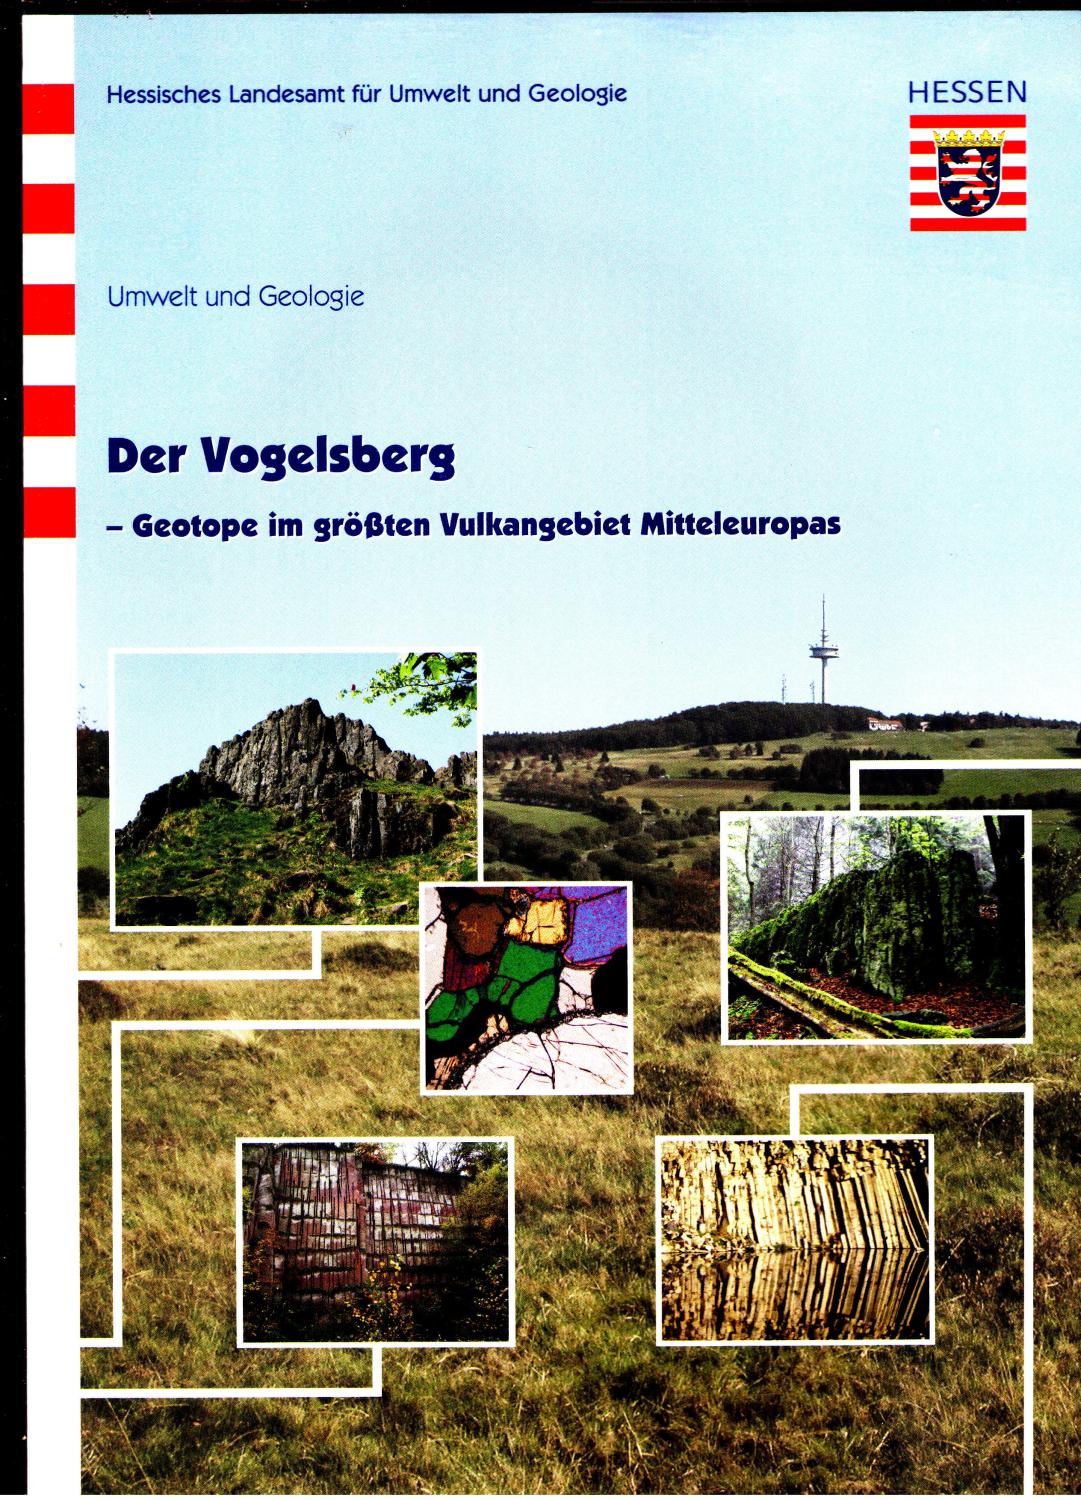 Der Vogelsberg: Geotope im größten Vulkangebiet Mitteleuropas (Umwelt und Geologie)